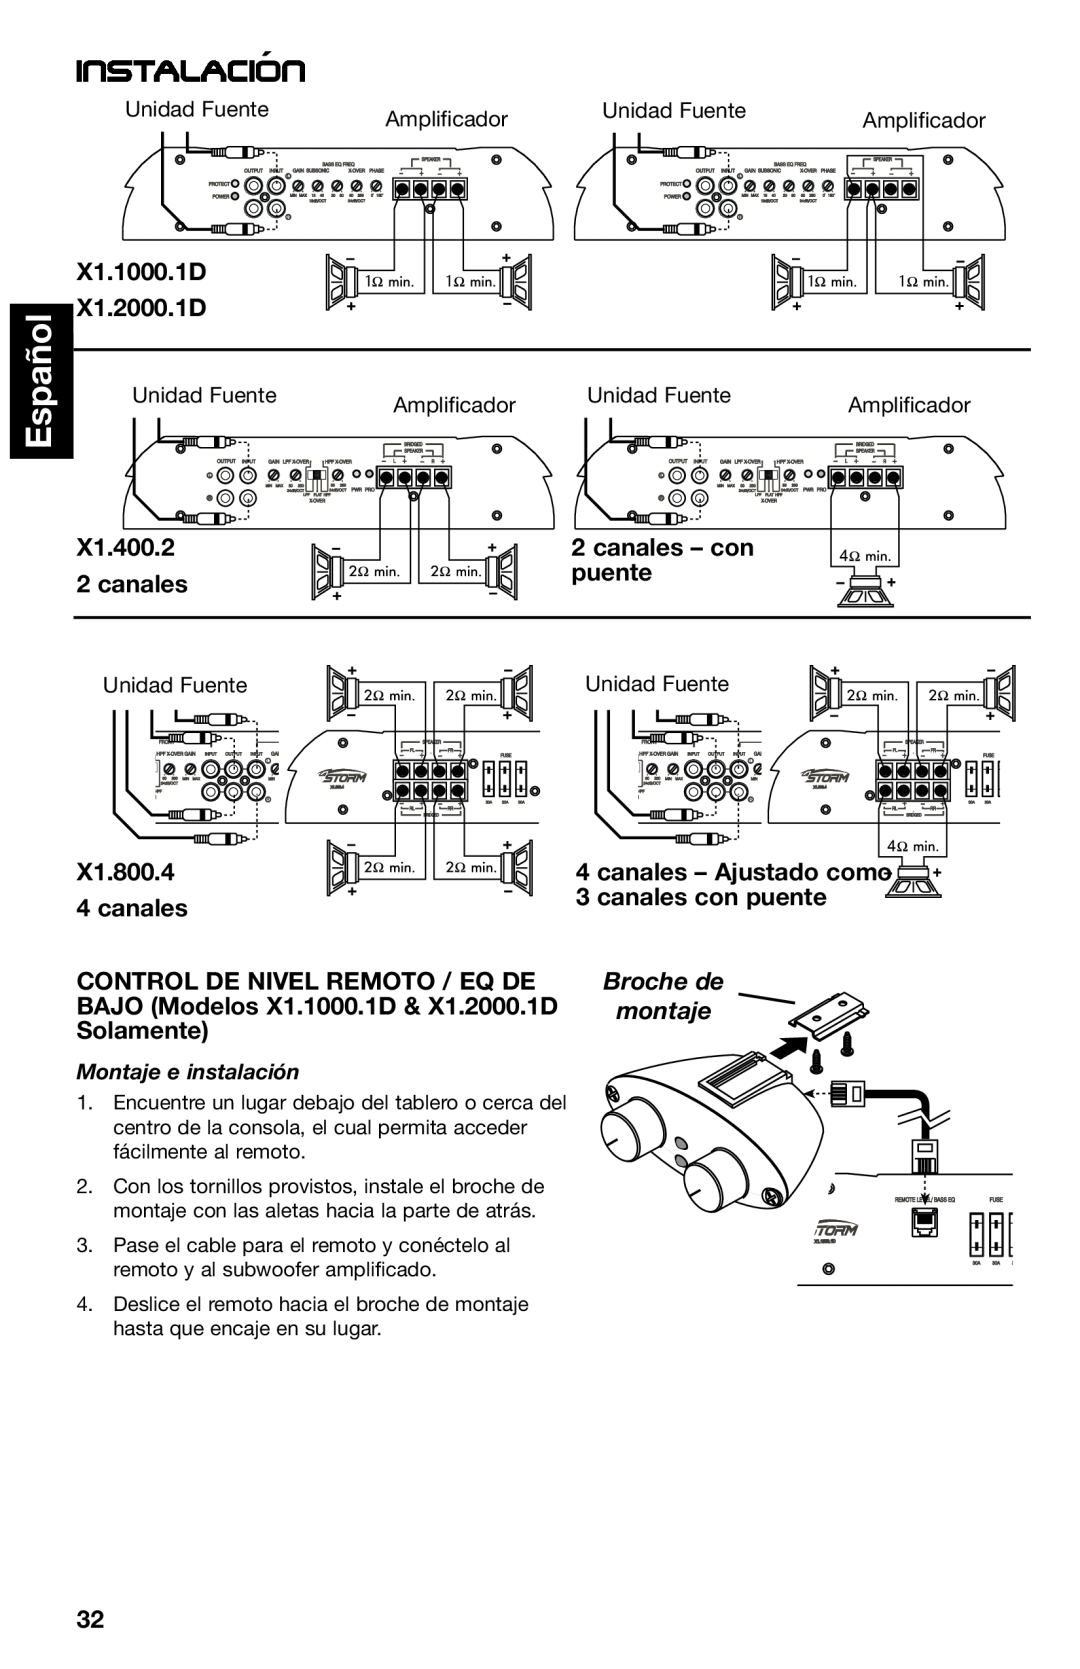 Lightning Audio X1.800.4 manual Español, Instalacion´, X1.1000.1D X1.2000.1D, X1.400.2 2 canales, canales – con, puente 